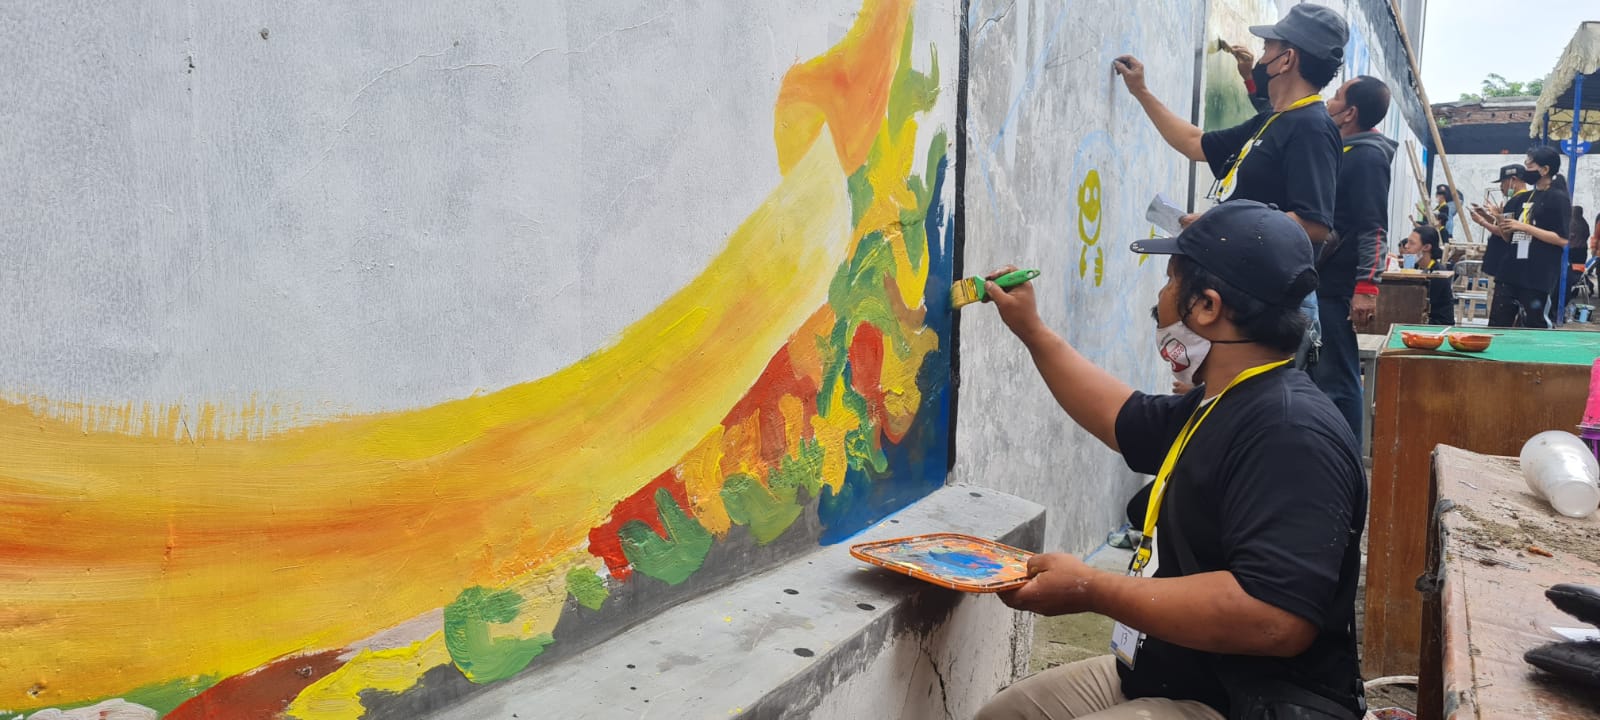 Dinas Pekerjaan Umum (PU) Bina Marga dan Cipta Karya Provinsi Jawa Tengah menggelar lomba mural nasional dalam rangka Hari Bakti Pekerjaan Umum 2021 ke 76 tahun dengan tema "Bangga Infrastruktur Negeri Sendiri".